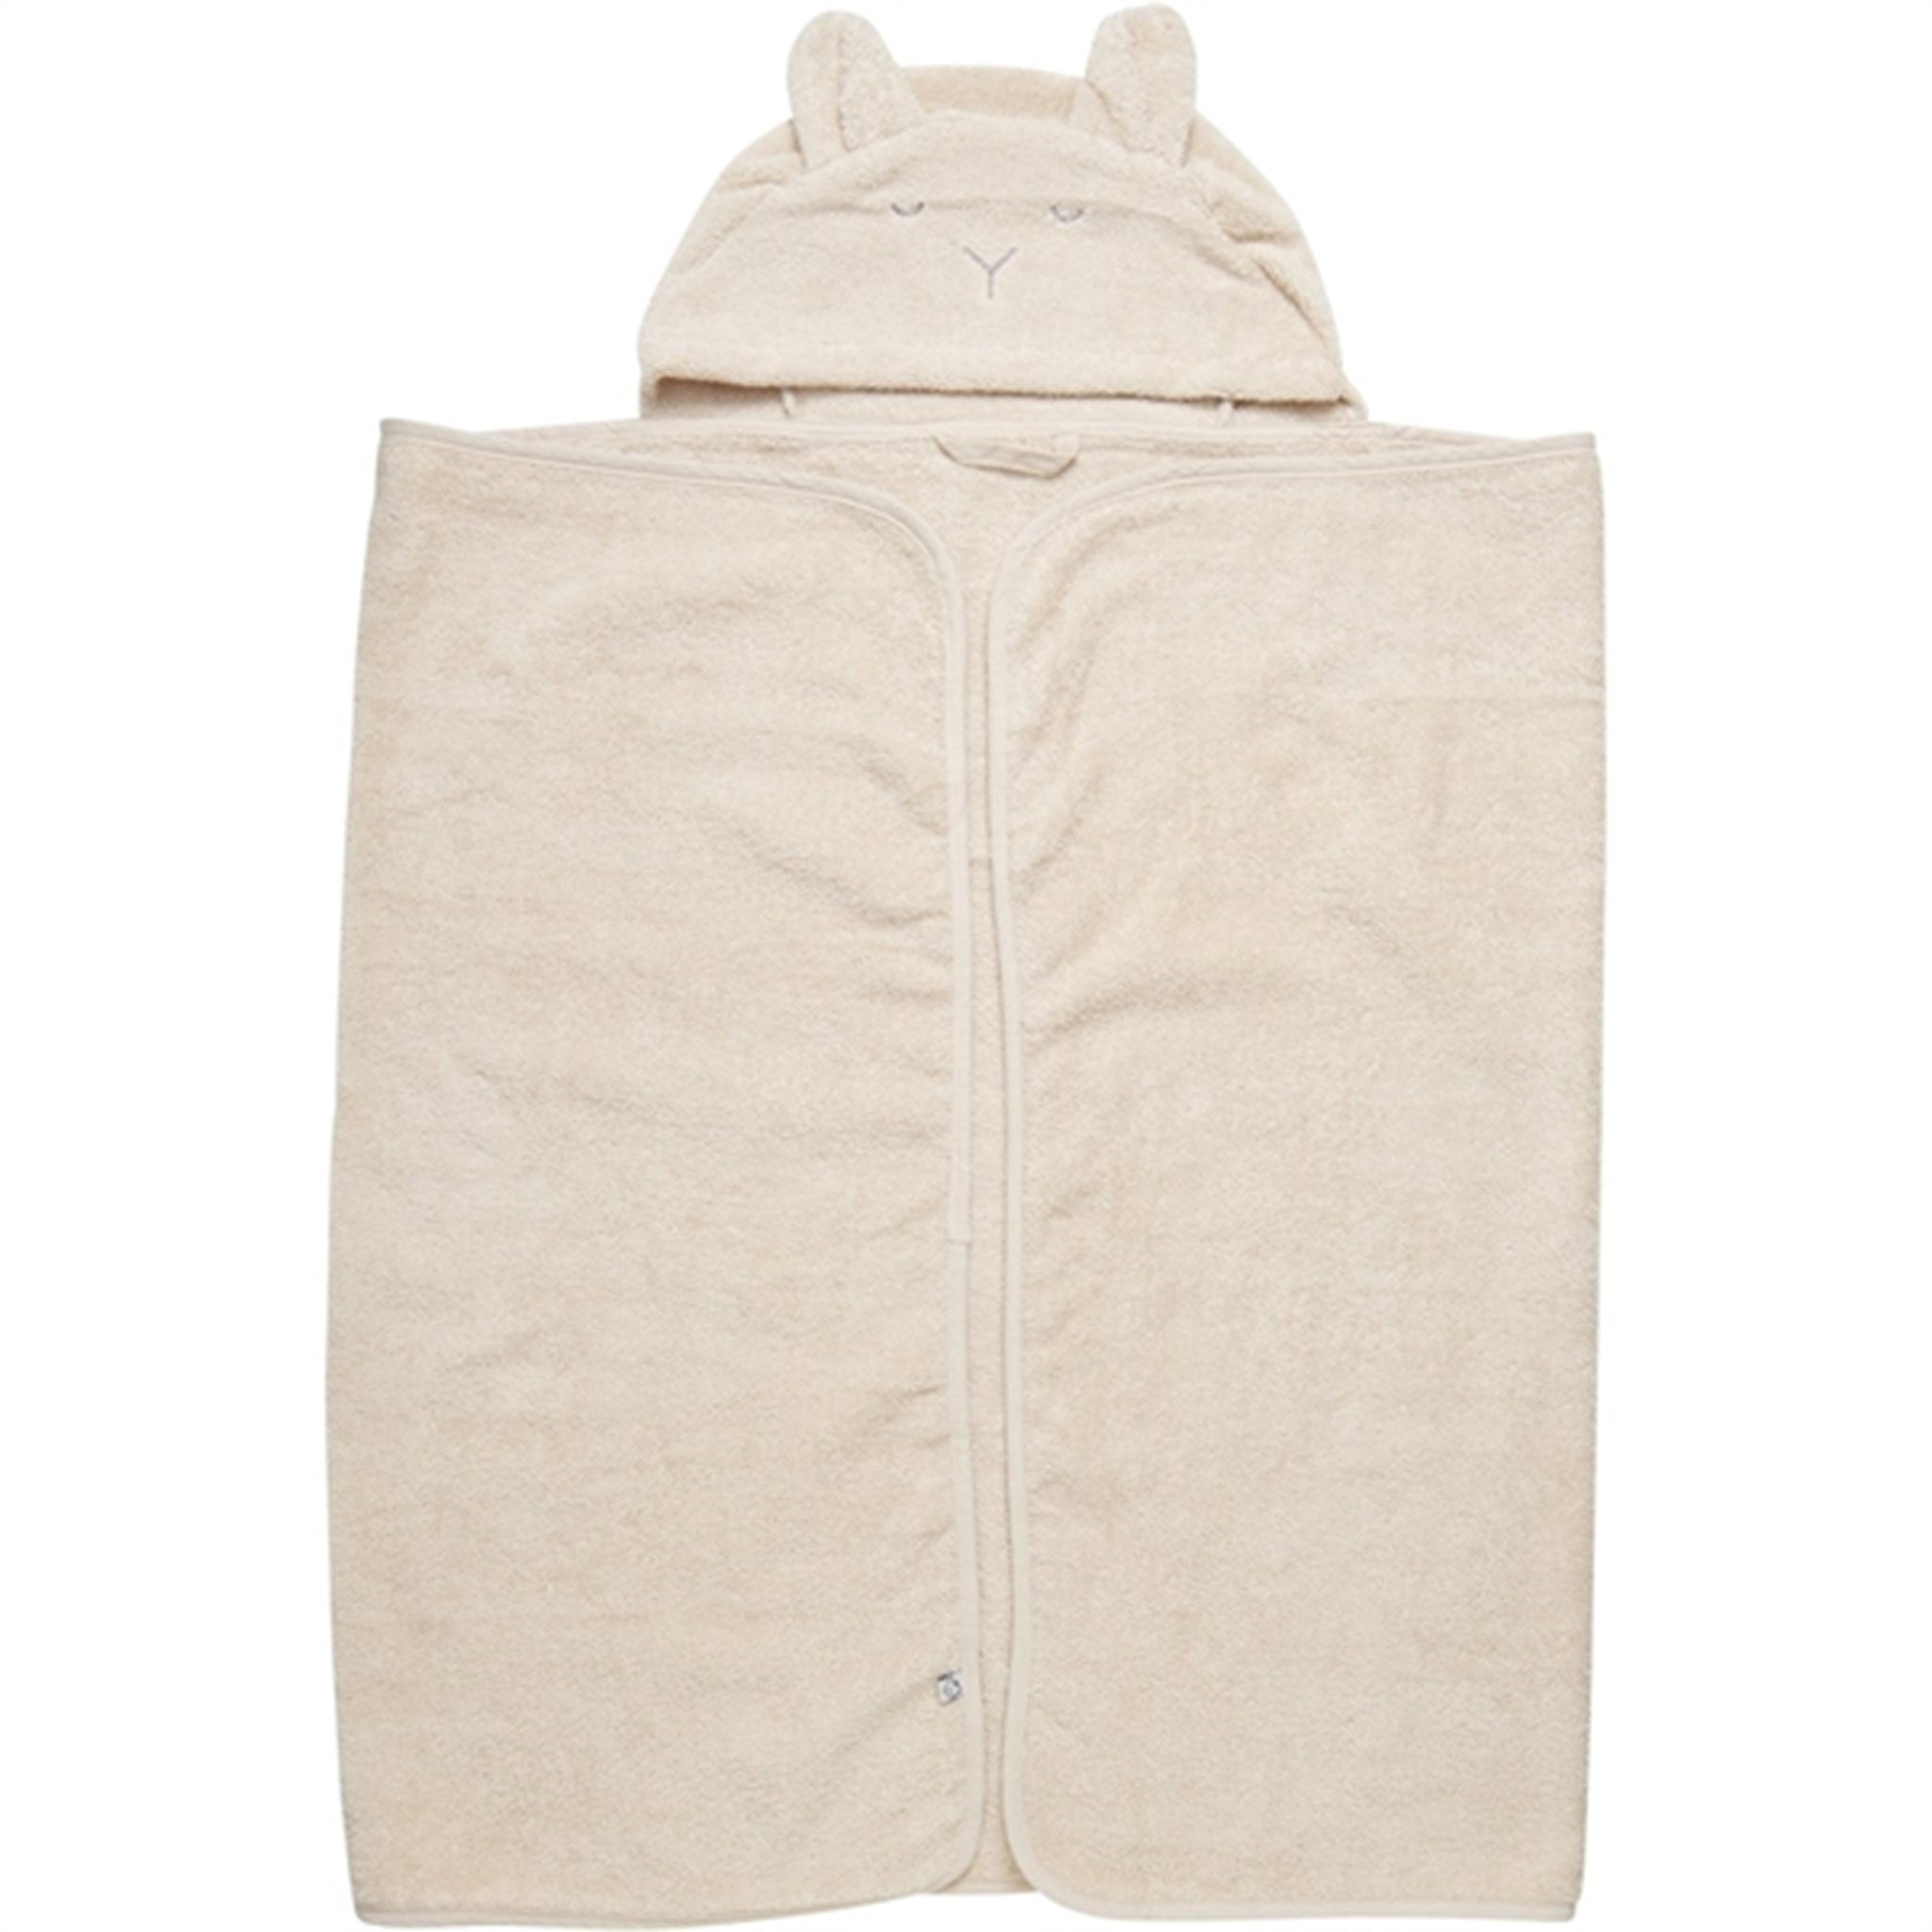 Pippi Badehåndkle med Hette Sandshell